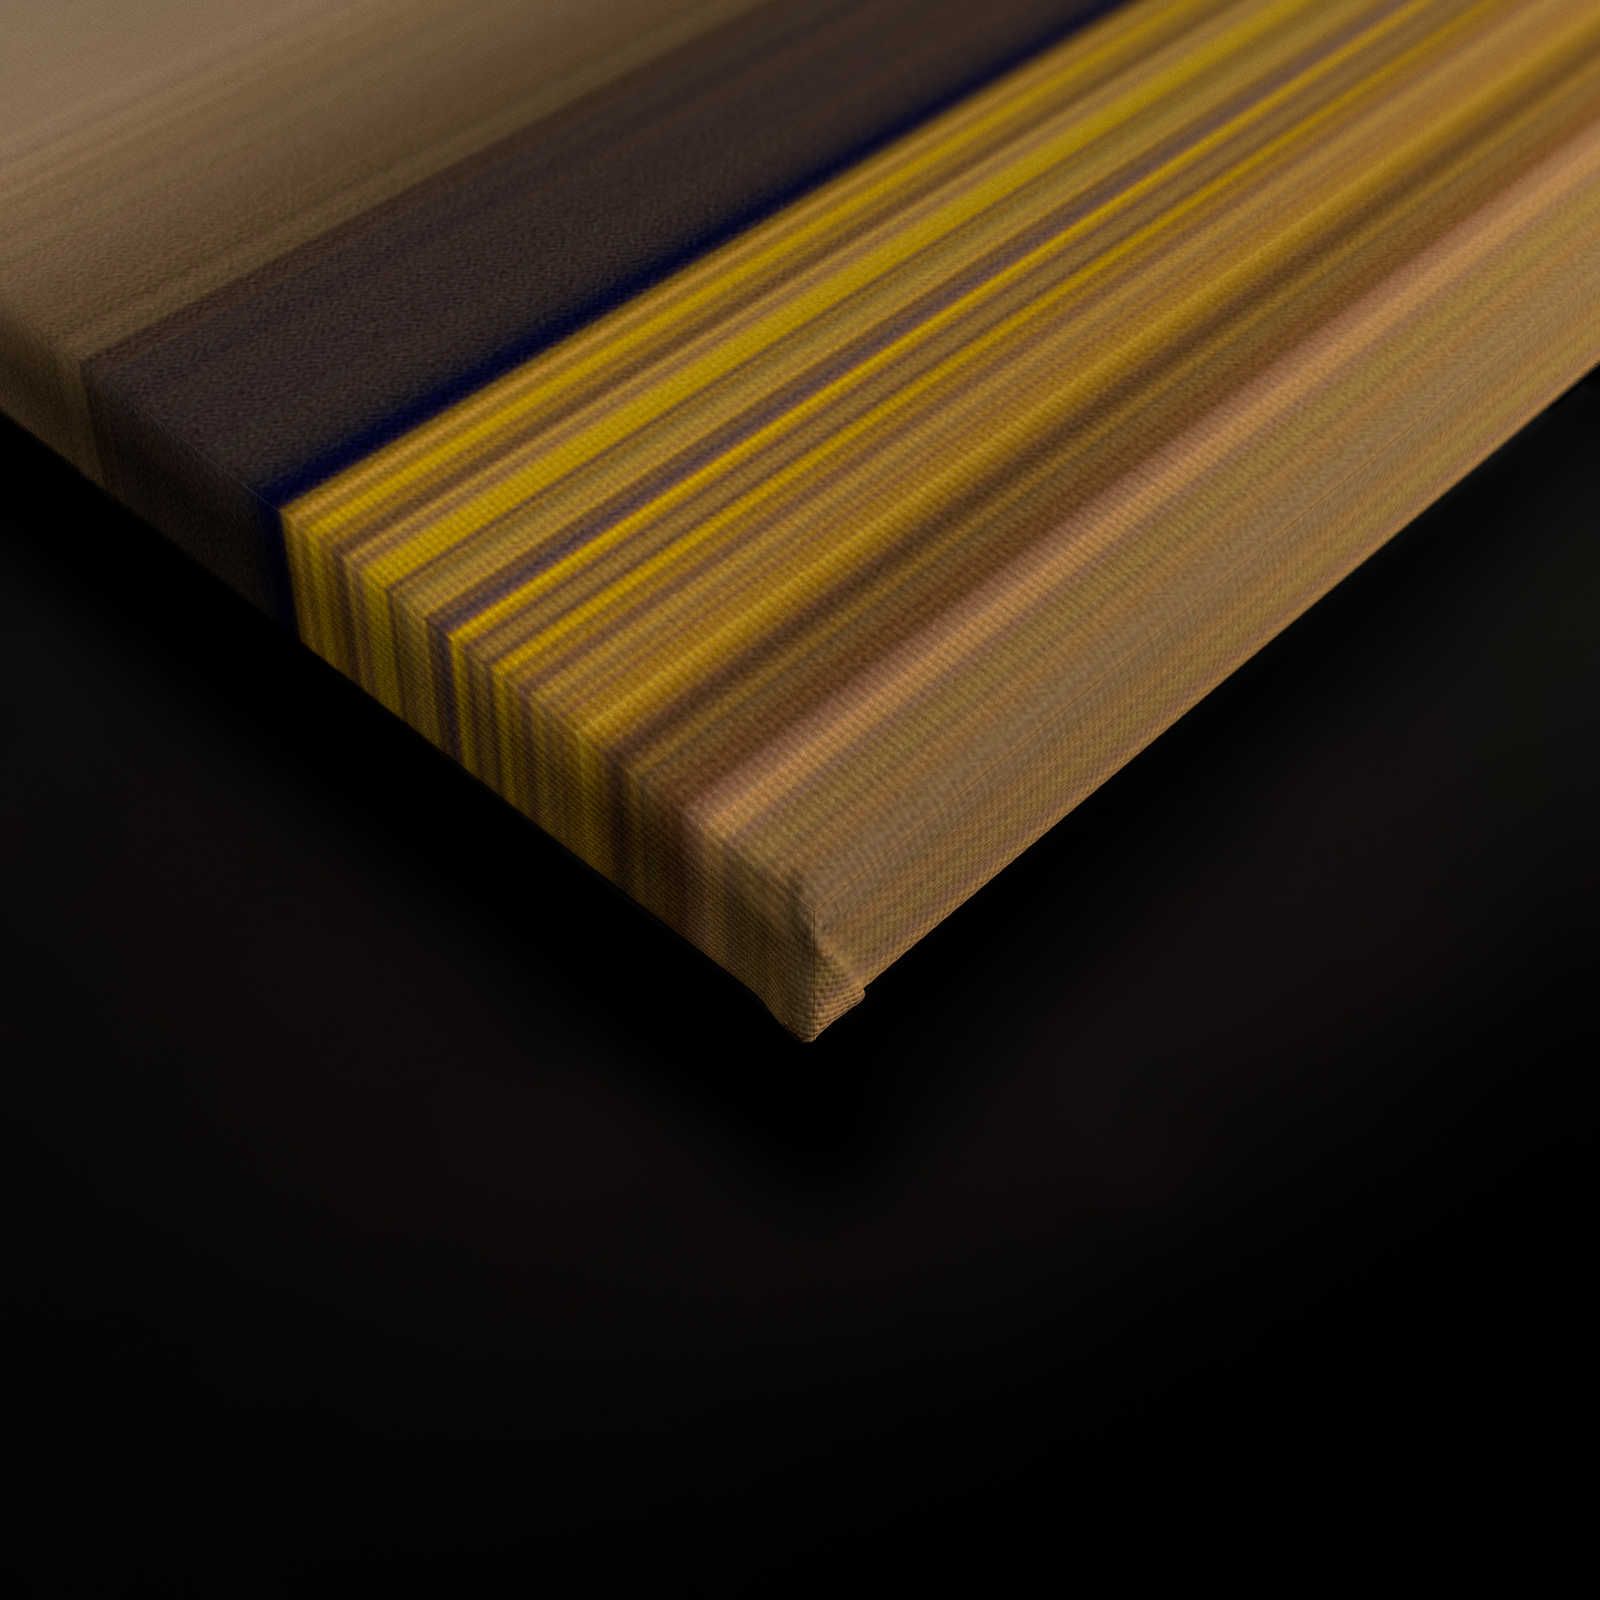             Horizon 3 - Quadro su tela Paesaggio astratto con disegni a colori - 0,90 m x 0,60 m
        